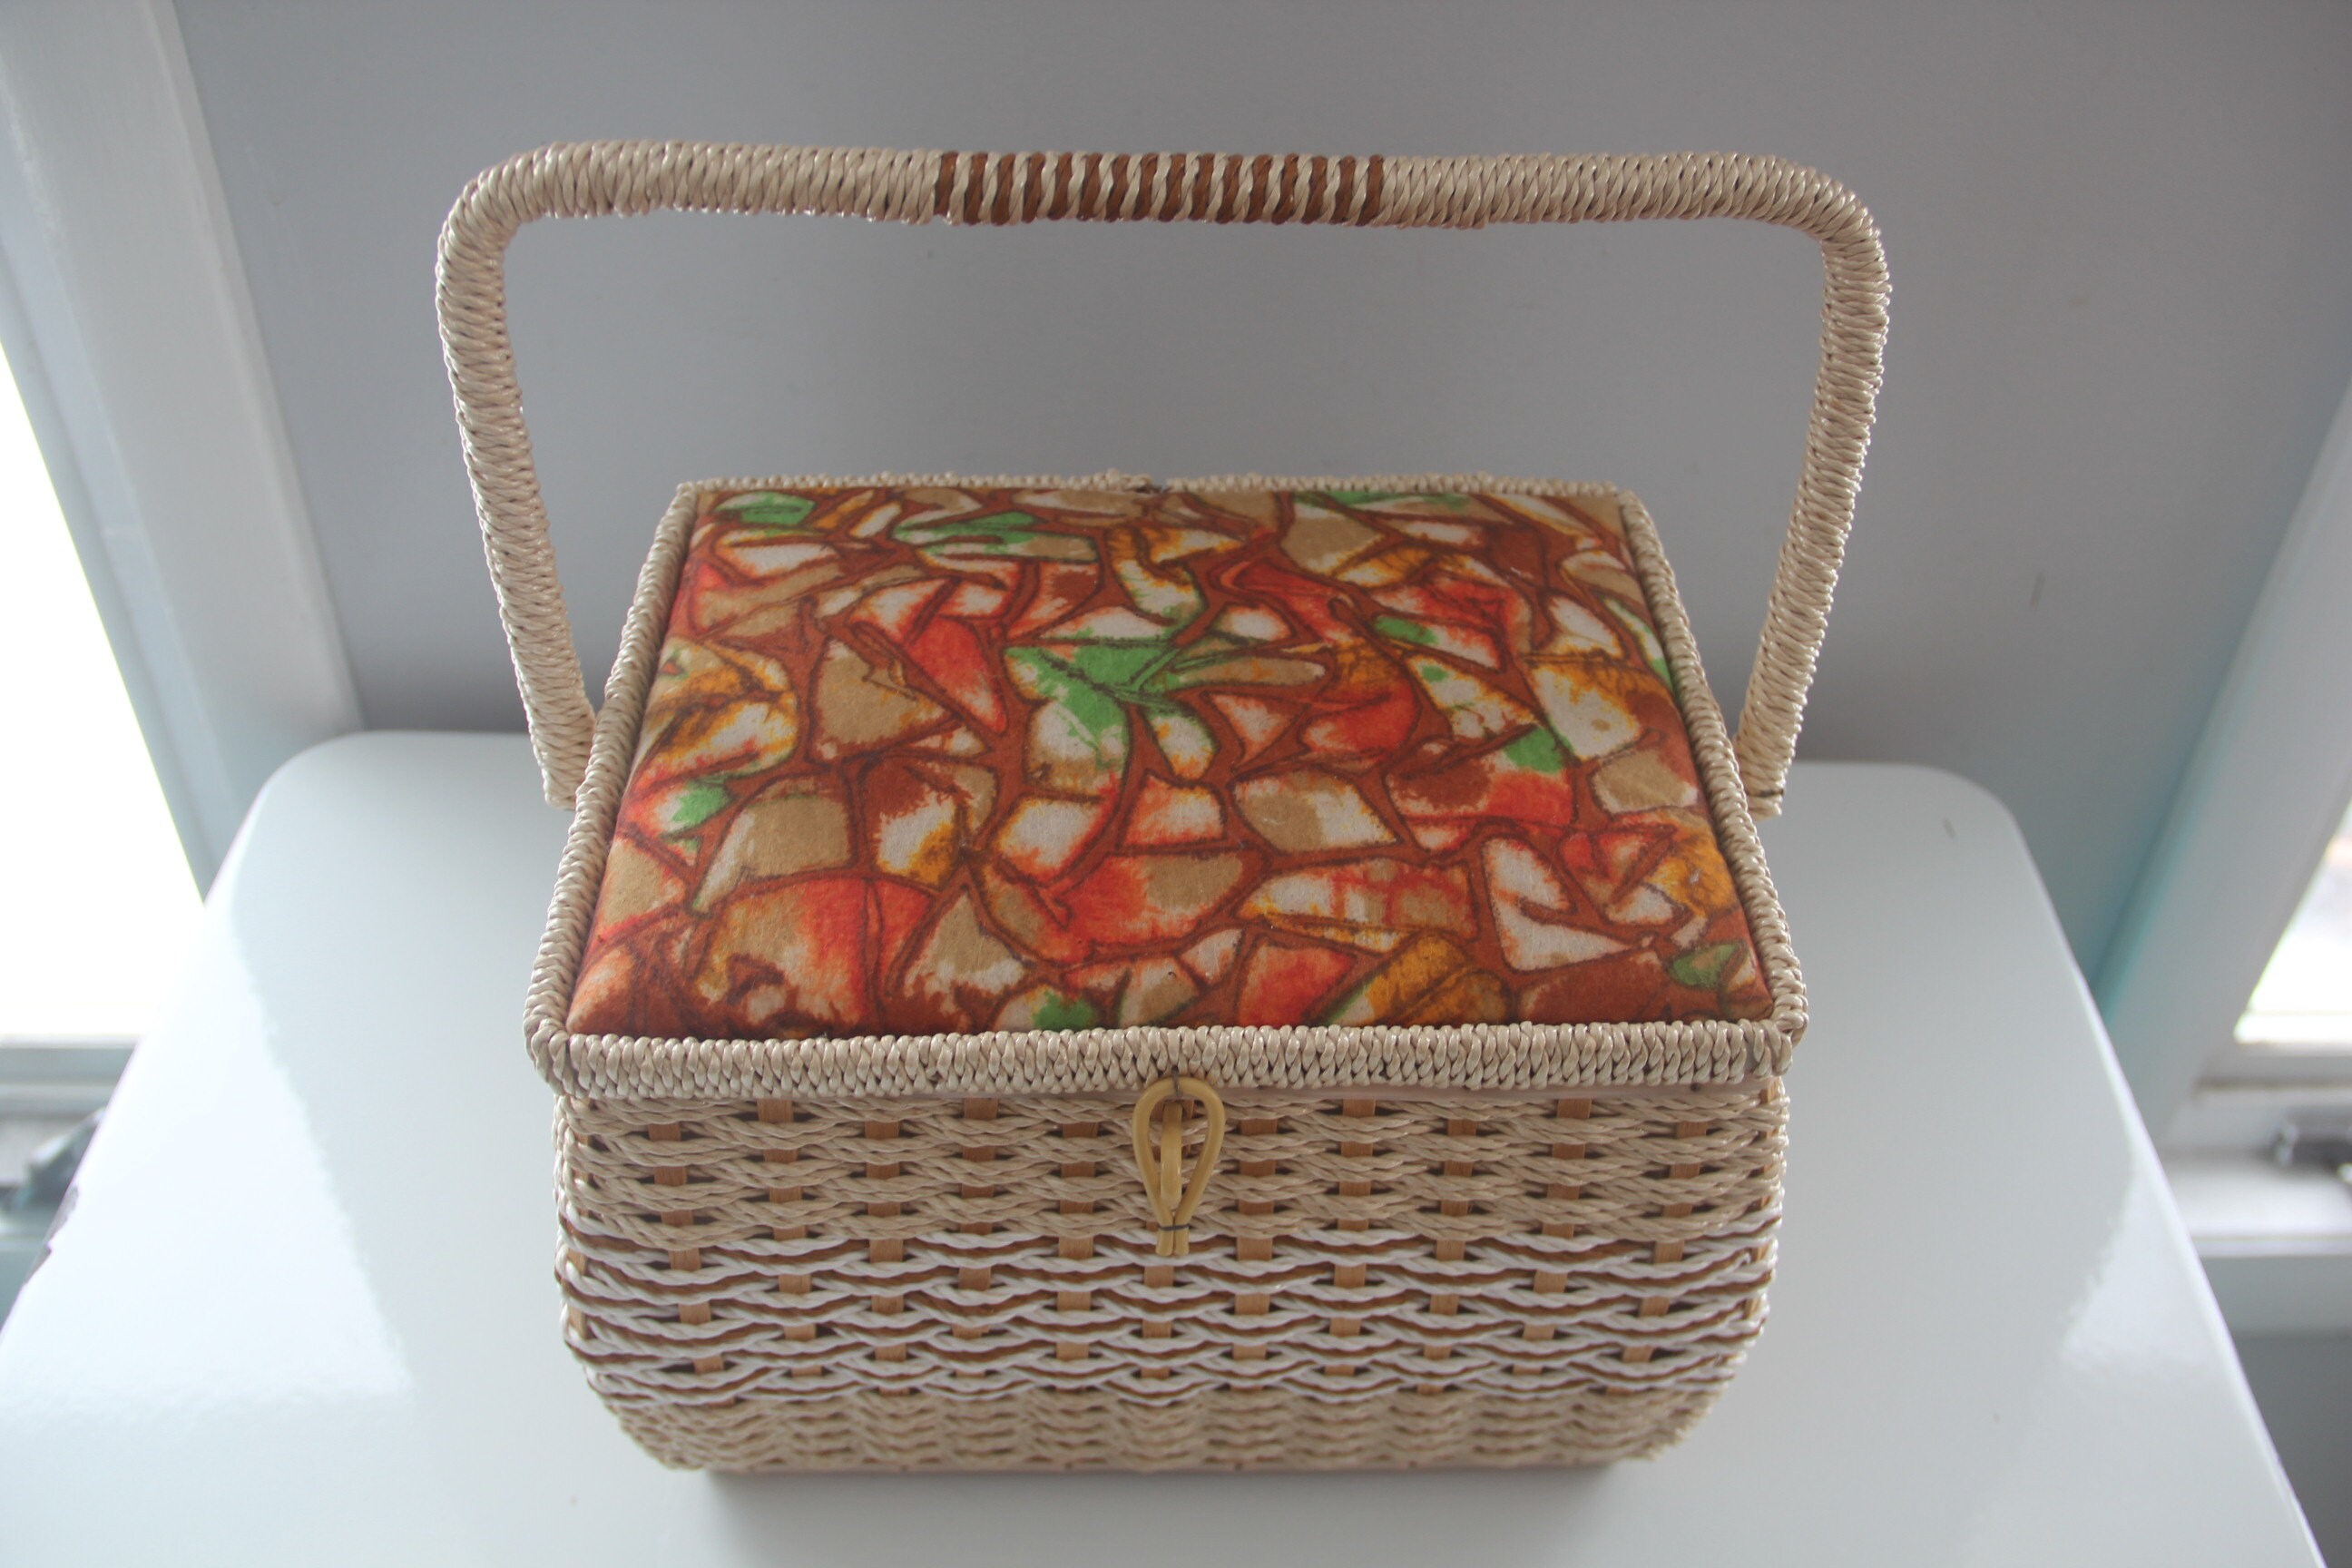 REDUCED! Vtg Singer Sewing Basket Floral Tapestry Lid Satin Lined